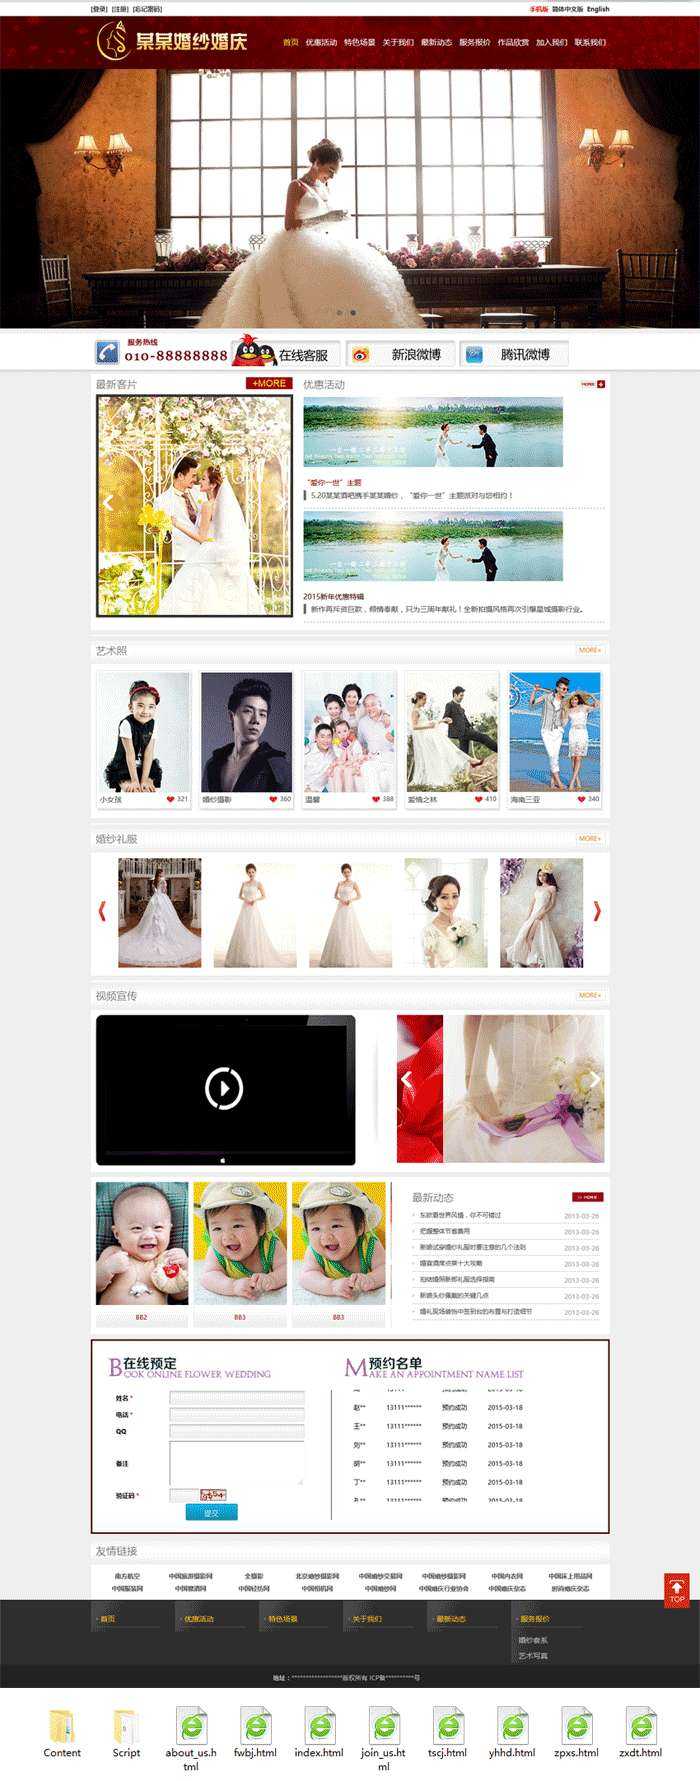 大气的婚庆公司婚纱摄影网站模板html整站